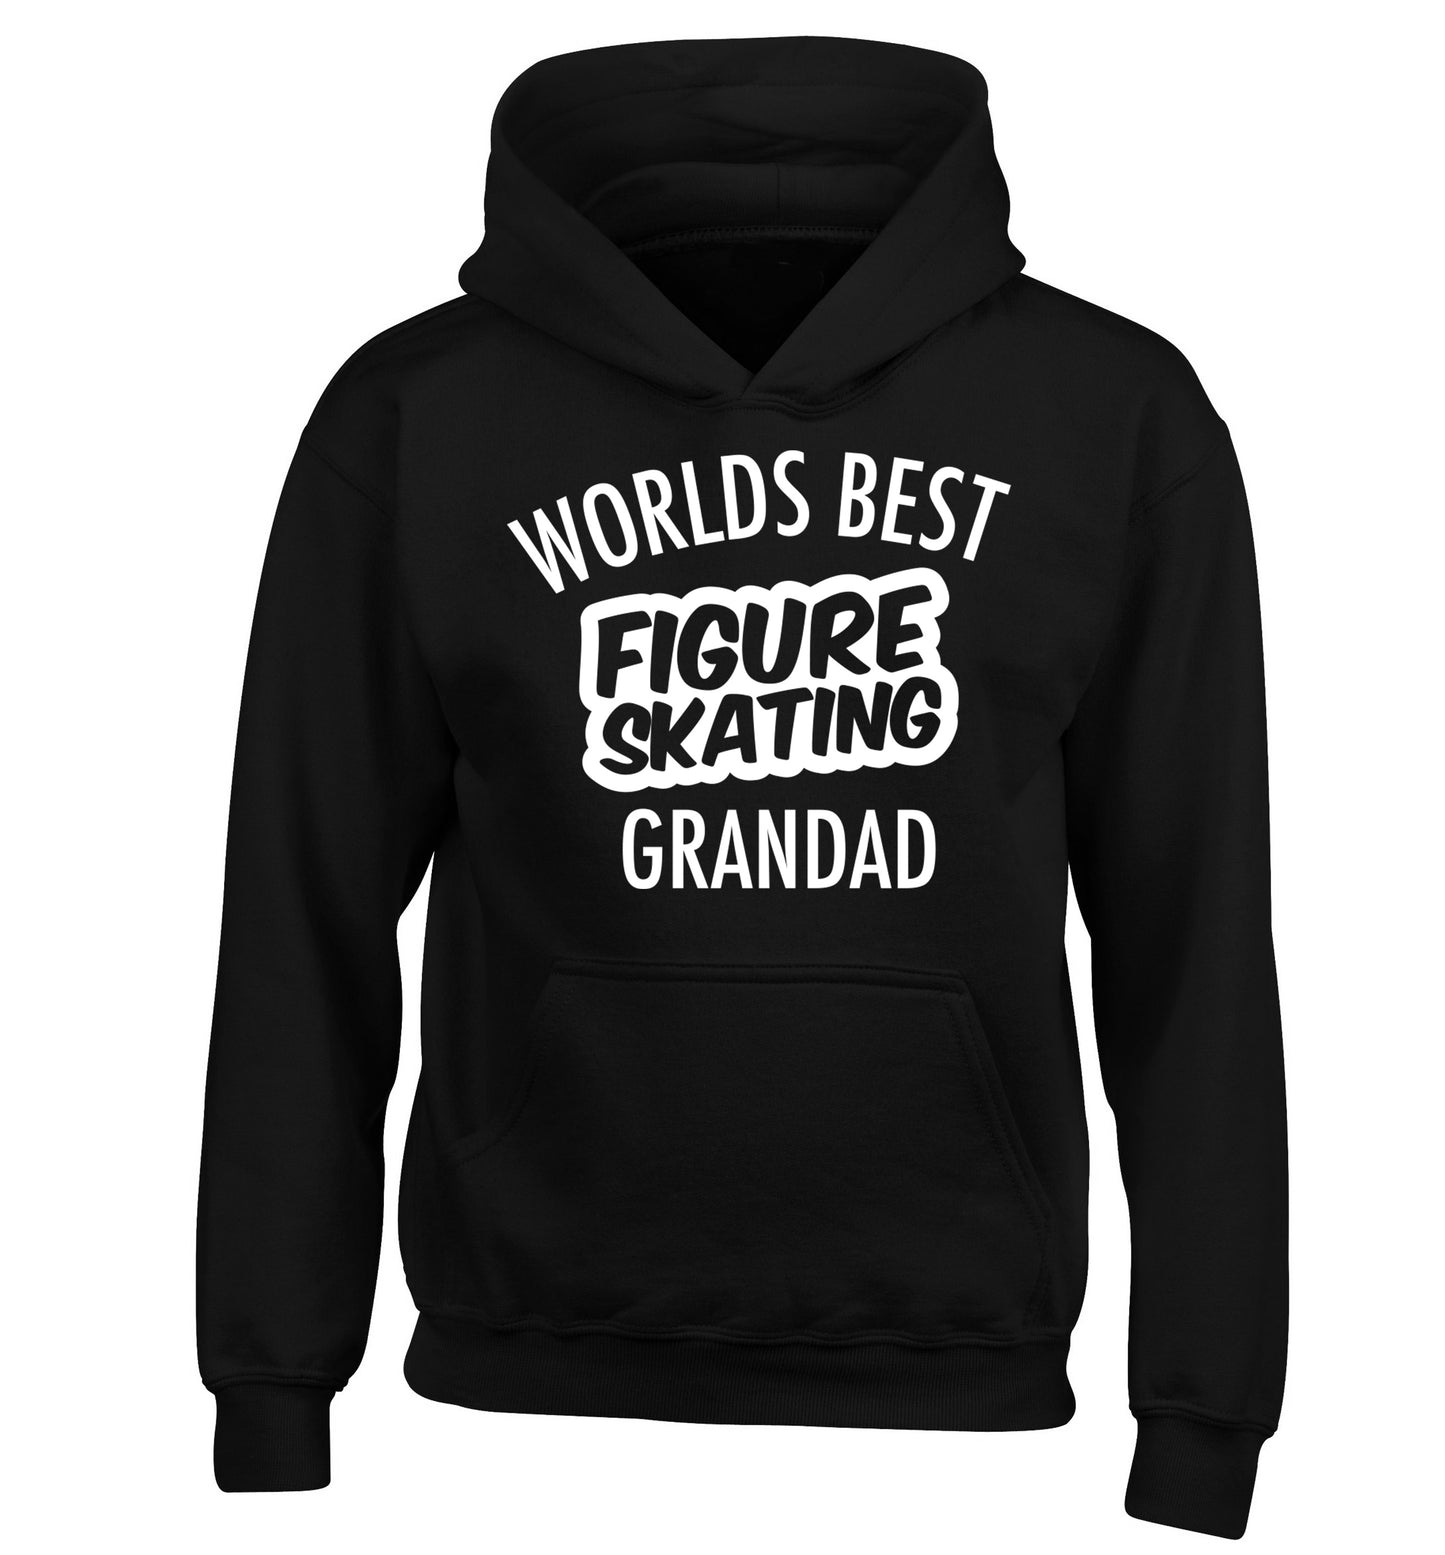 Worlds best figure skating grandad children's black hoodie 12-14 Years